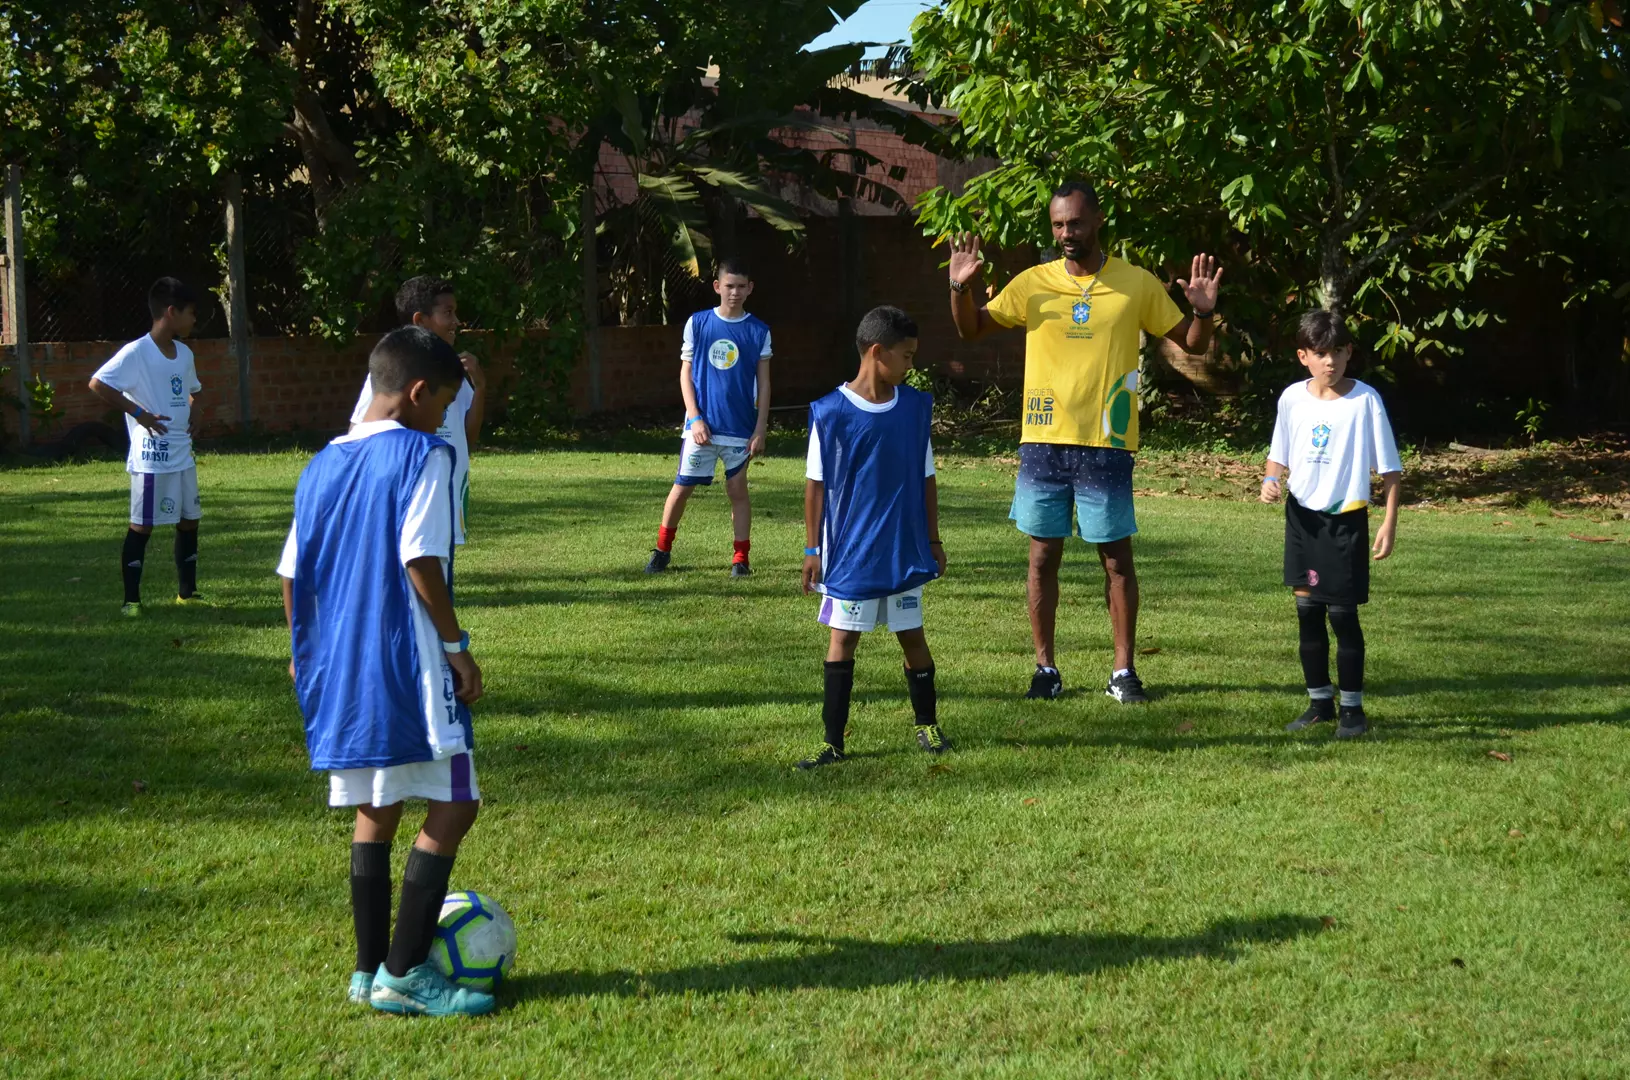 Festival de Futebol encerra etapa de capacitação do Projeto Gol do Brasil em Rondônia